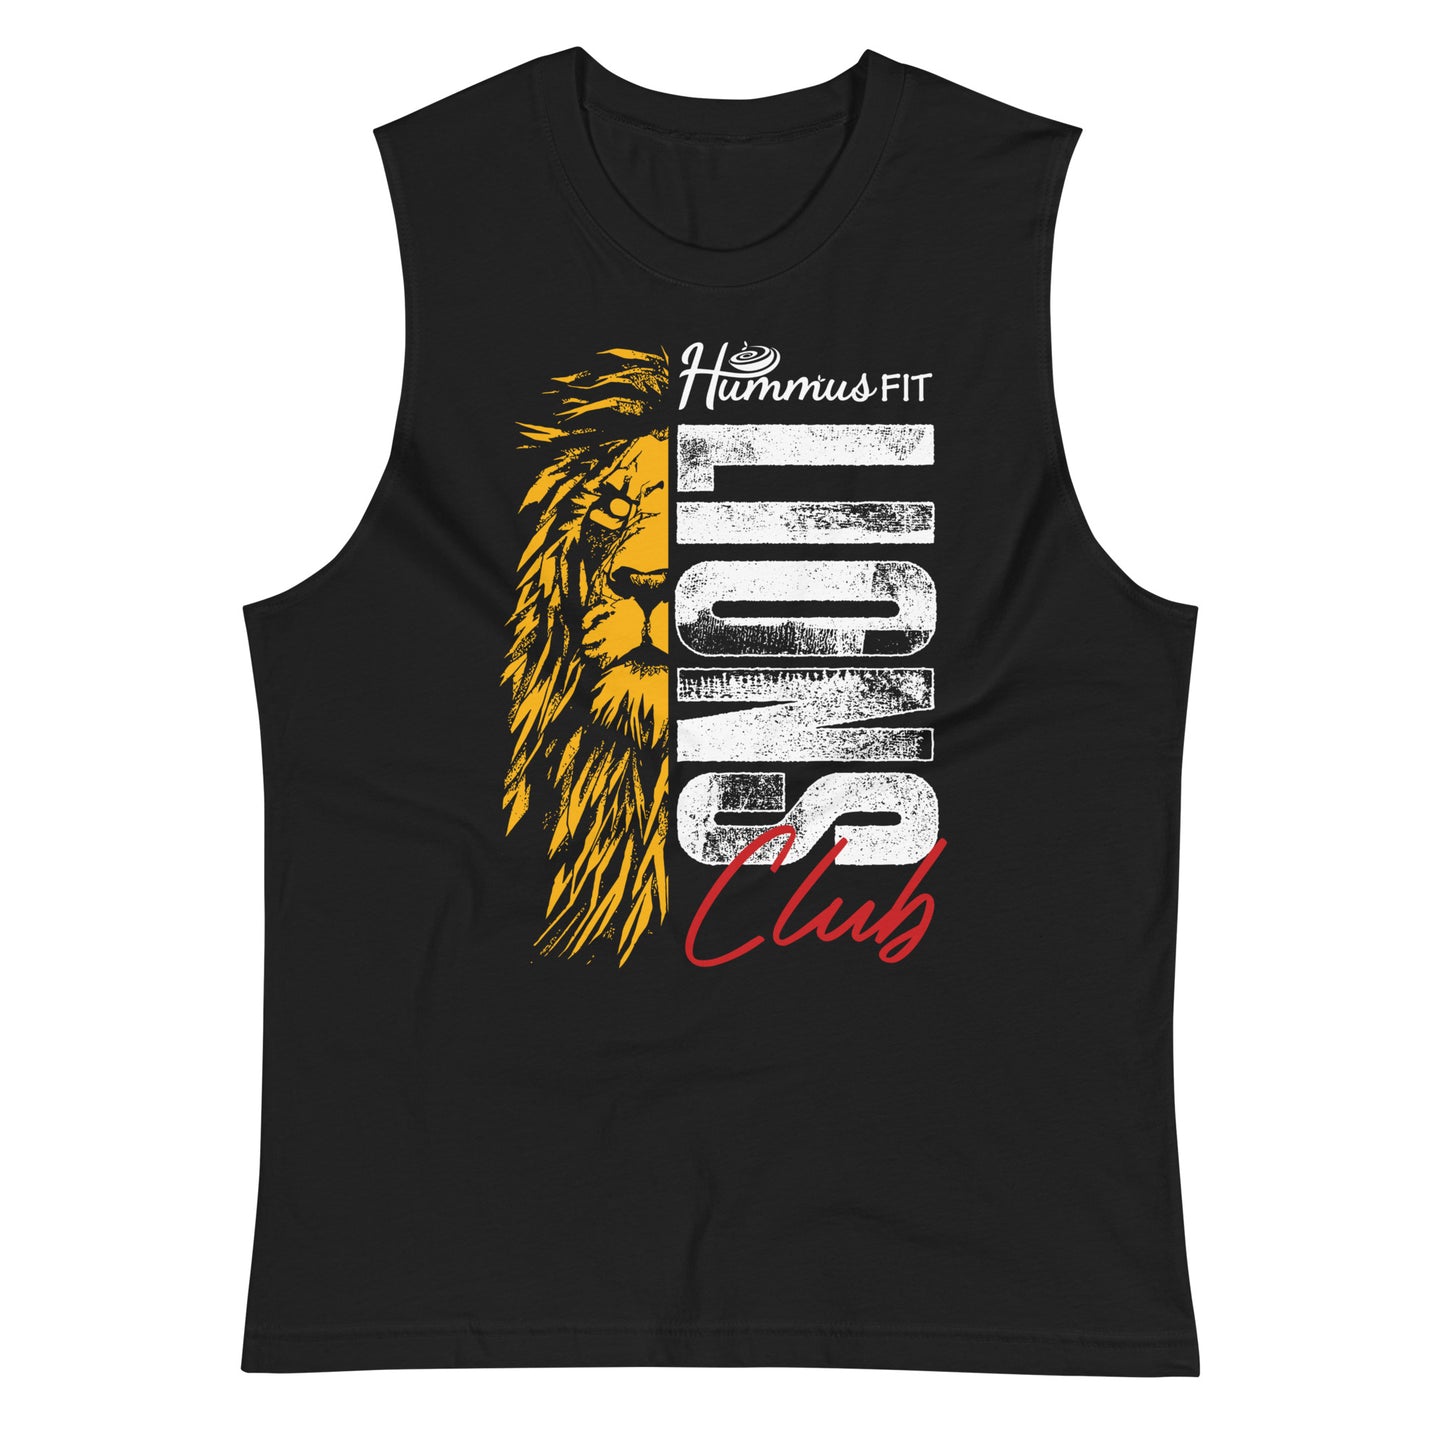 Unisex Lion's Club Muscle Shirt (Black)